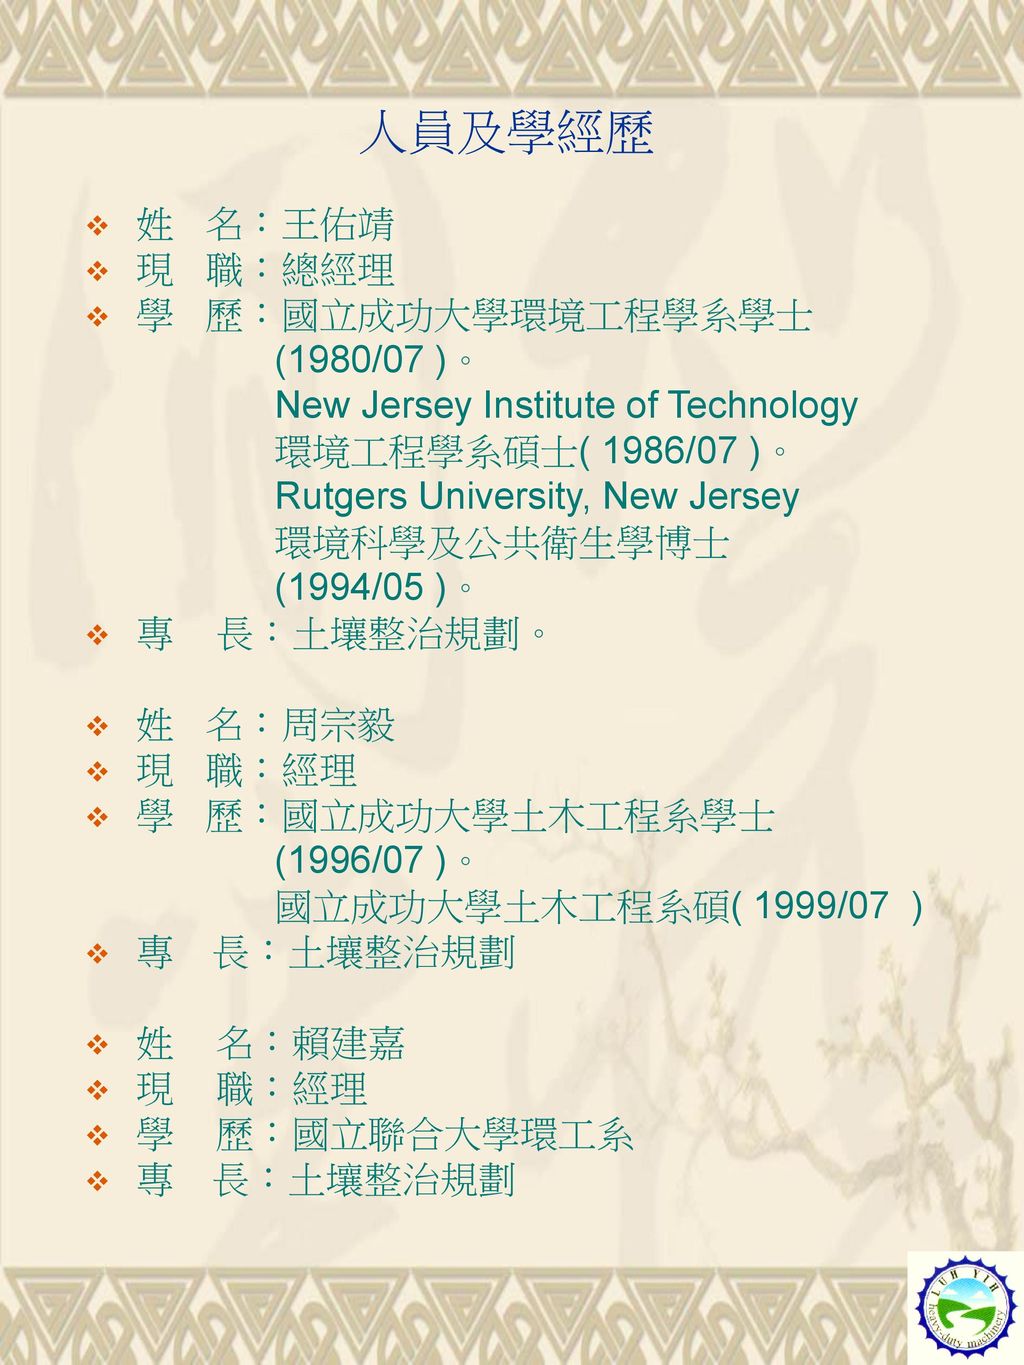 人員及學經歷 姓 名：王佑靖 現 職：總經理 學 歷：國立成功大學環境工程學系學士 (1980/07 )。